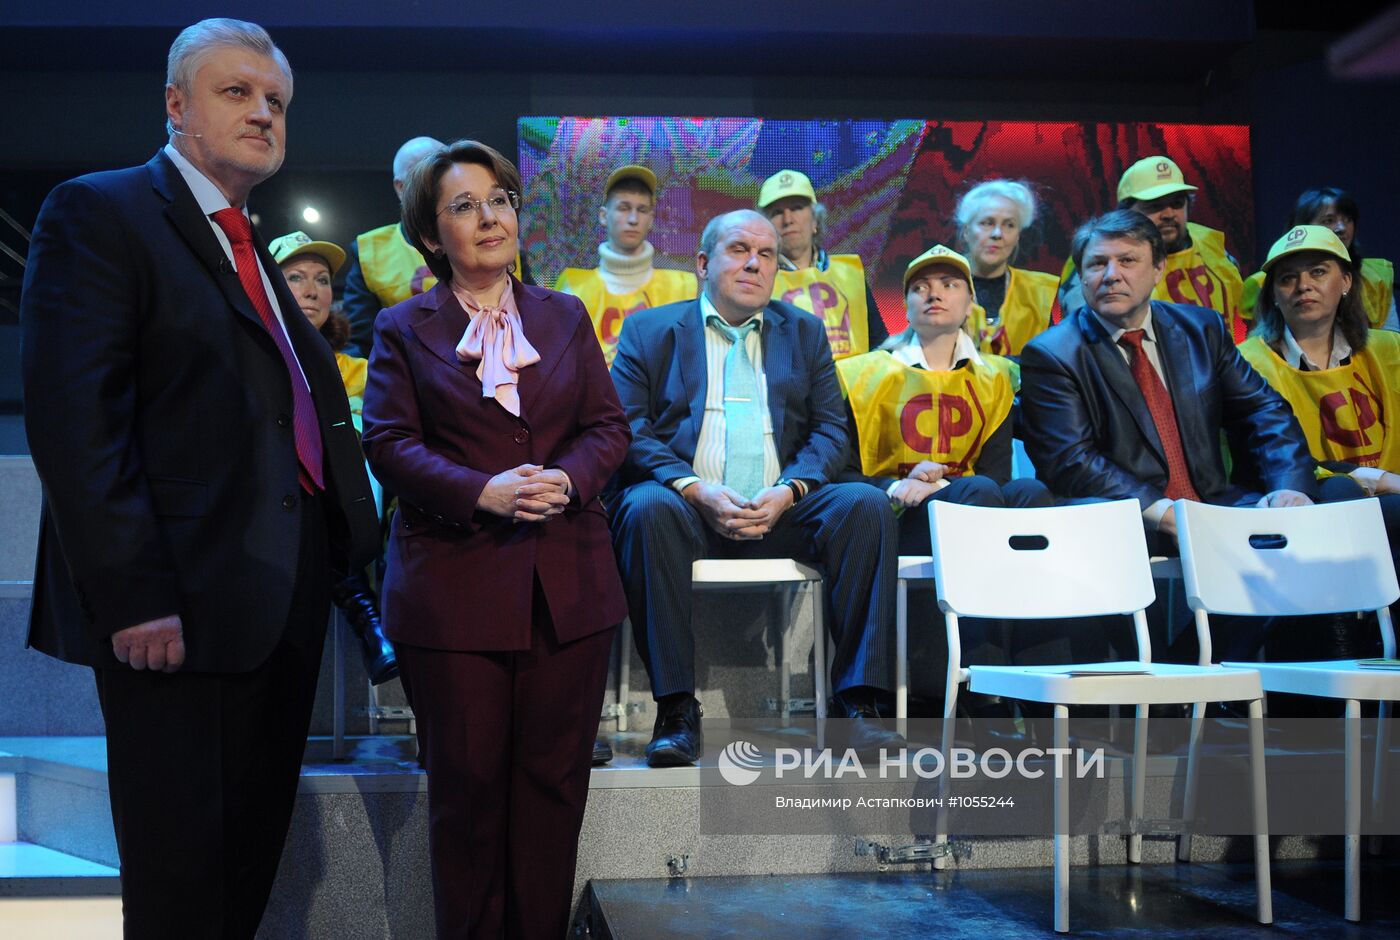 Дебаты между кандидатами в президенты РФ